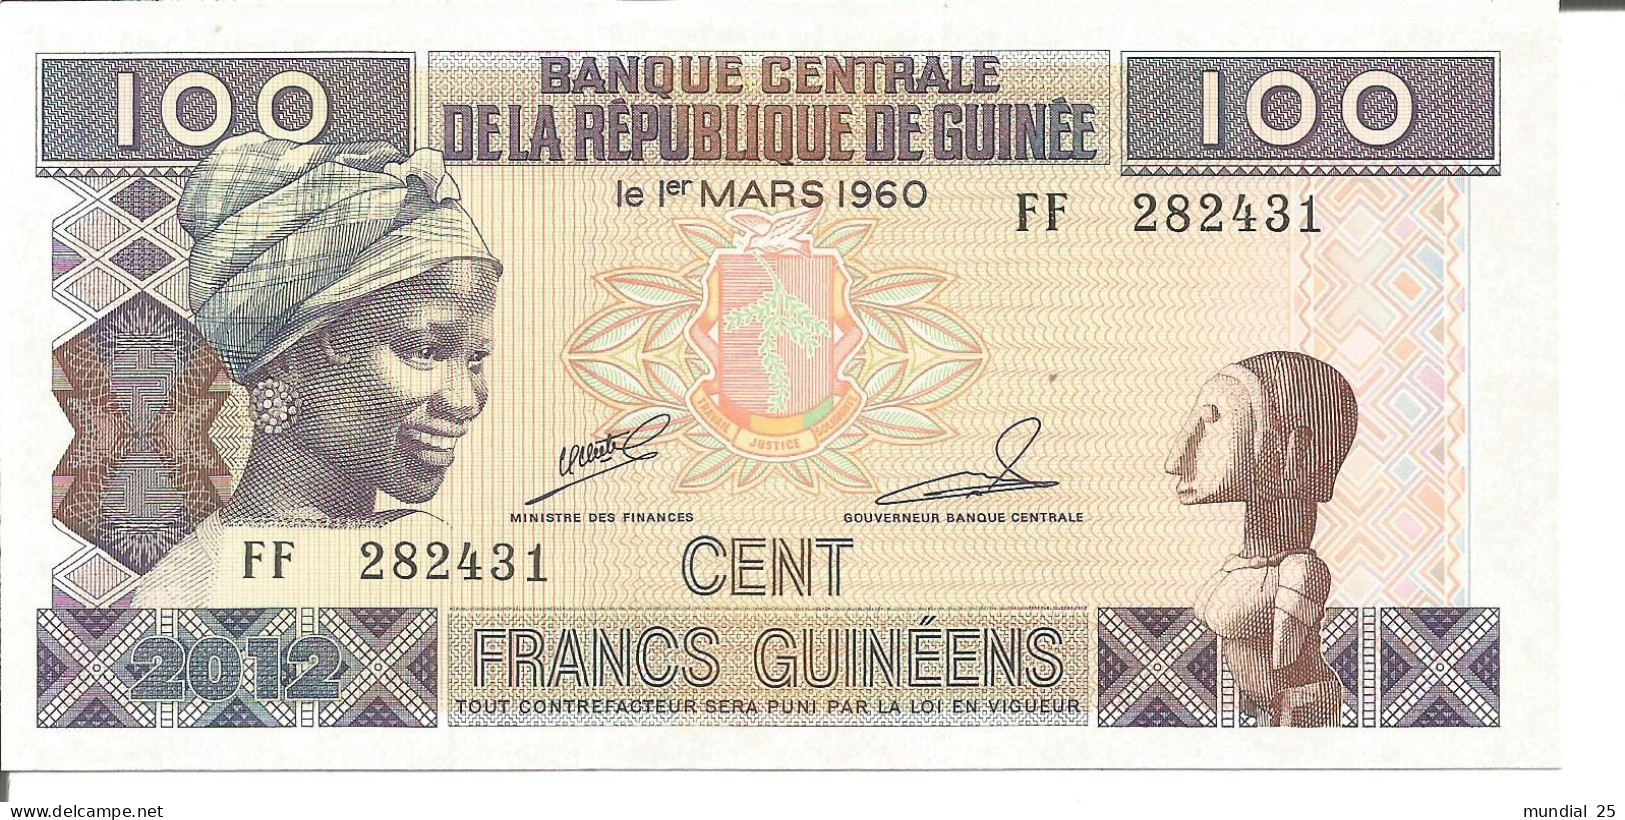 3 GUINEA NOTES 100 FRANCS GUINÉENS 2012 - Guinea